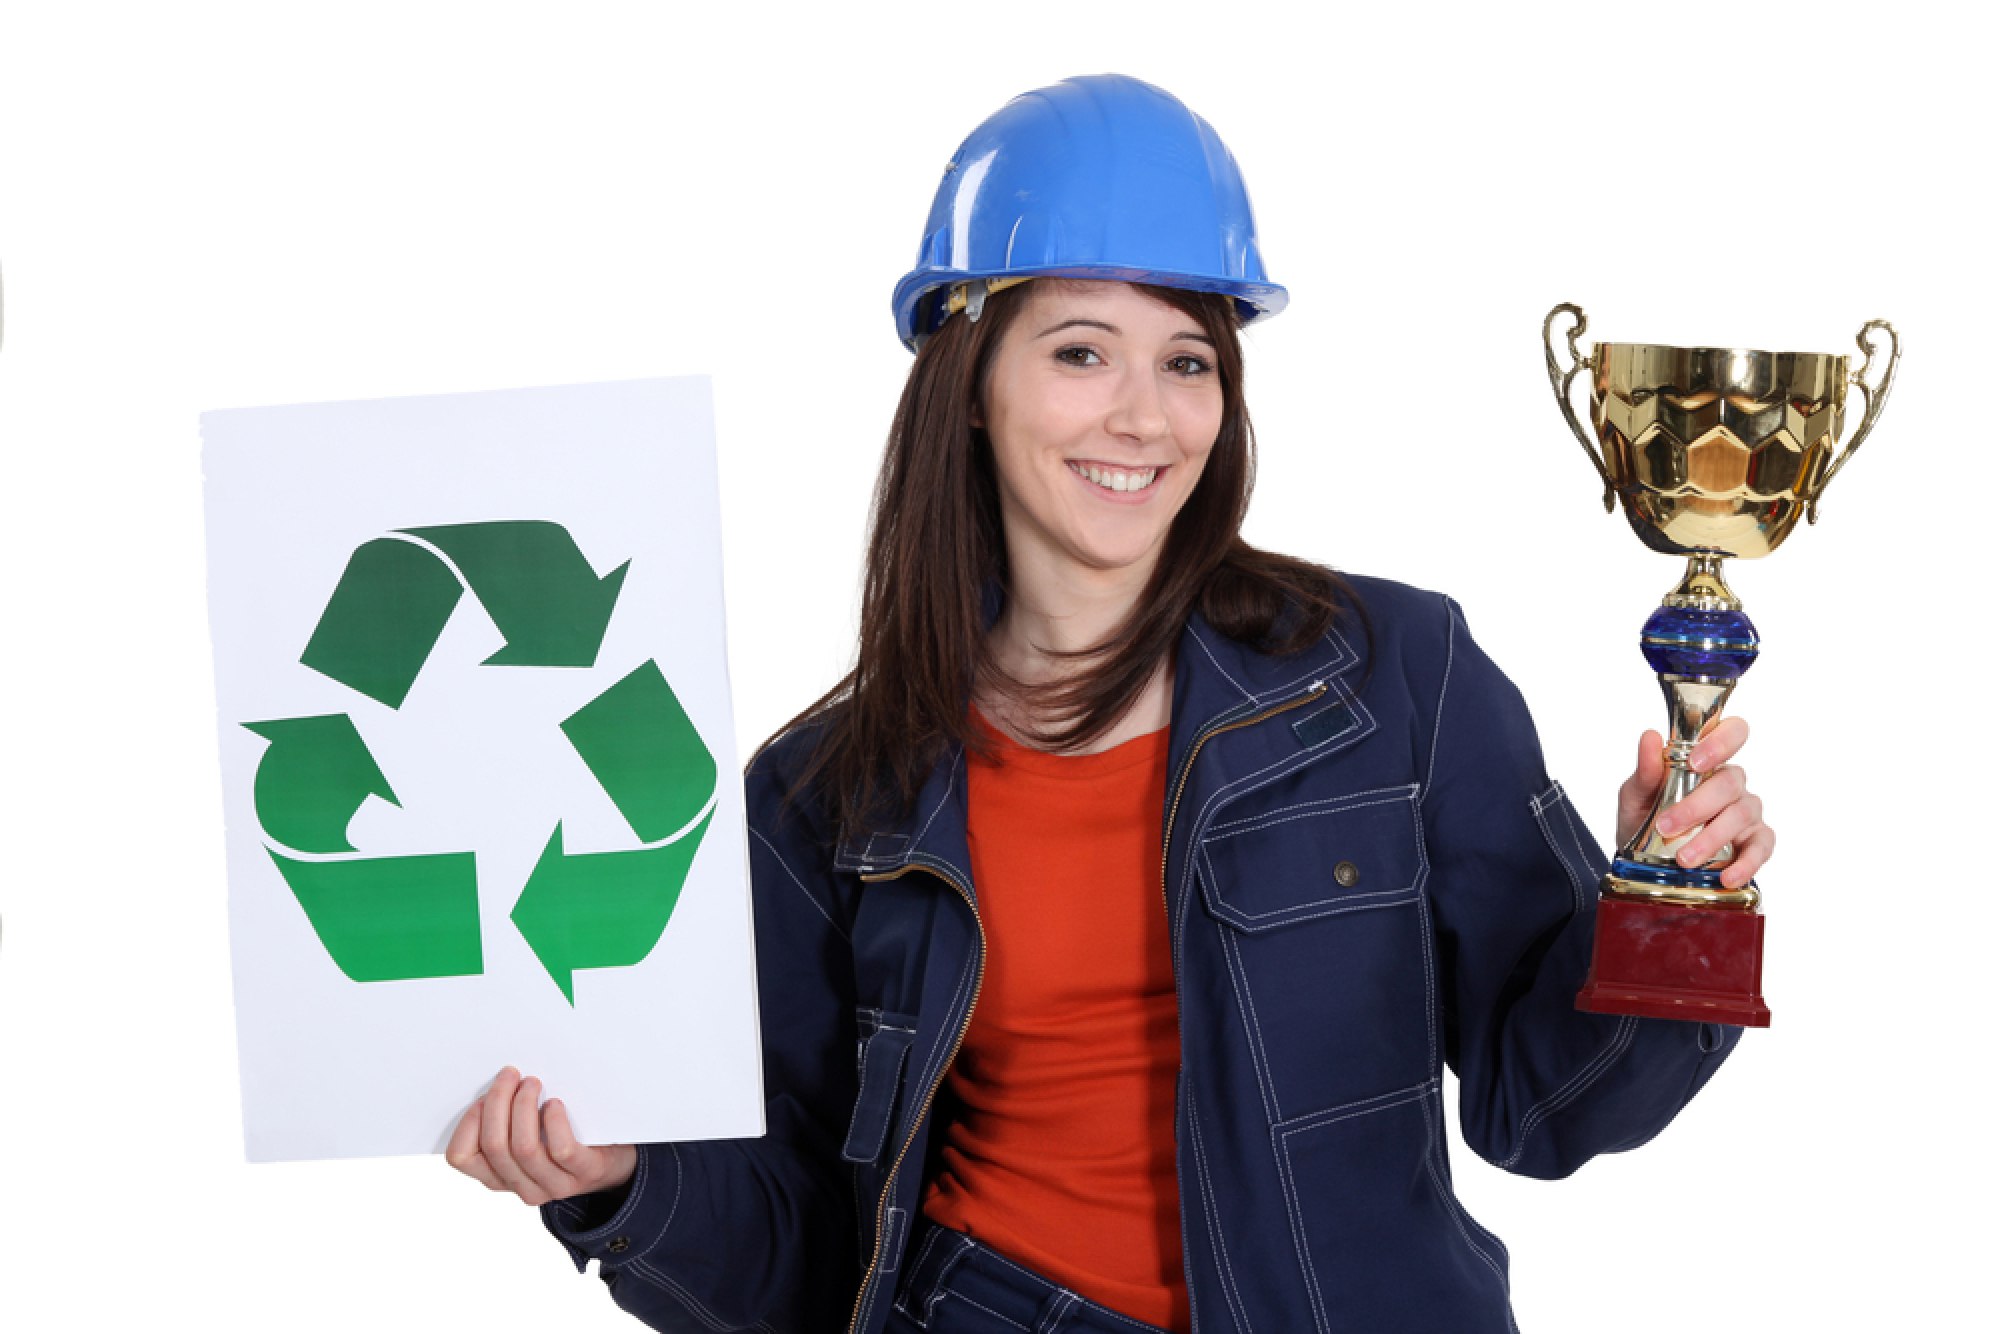 Une femme avec un casque de chantier tient un trophée dans une main et une pancarte avec le signe recyclage dans l'autre main